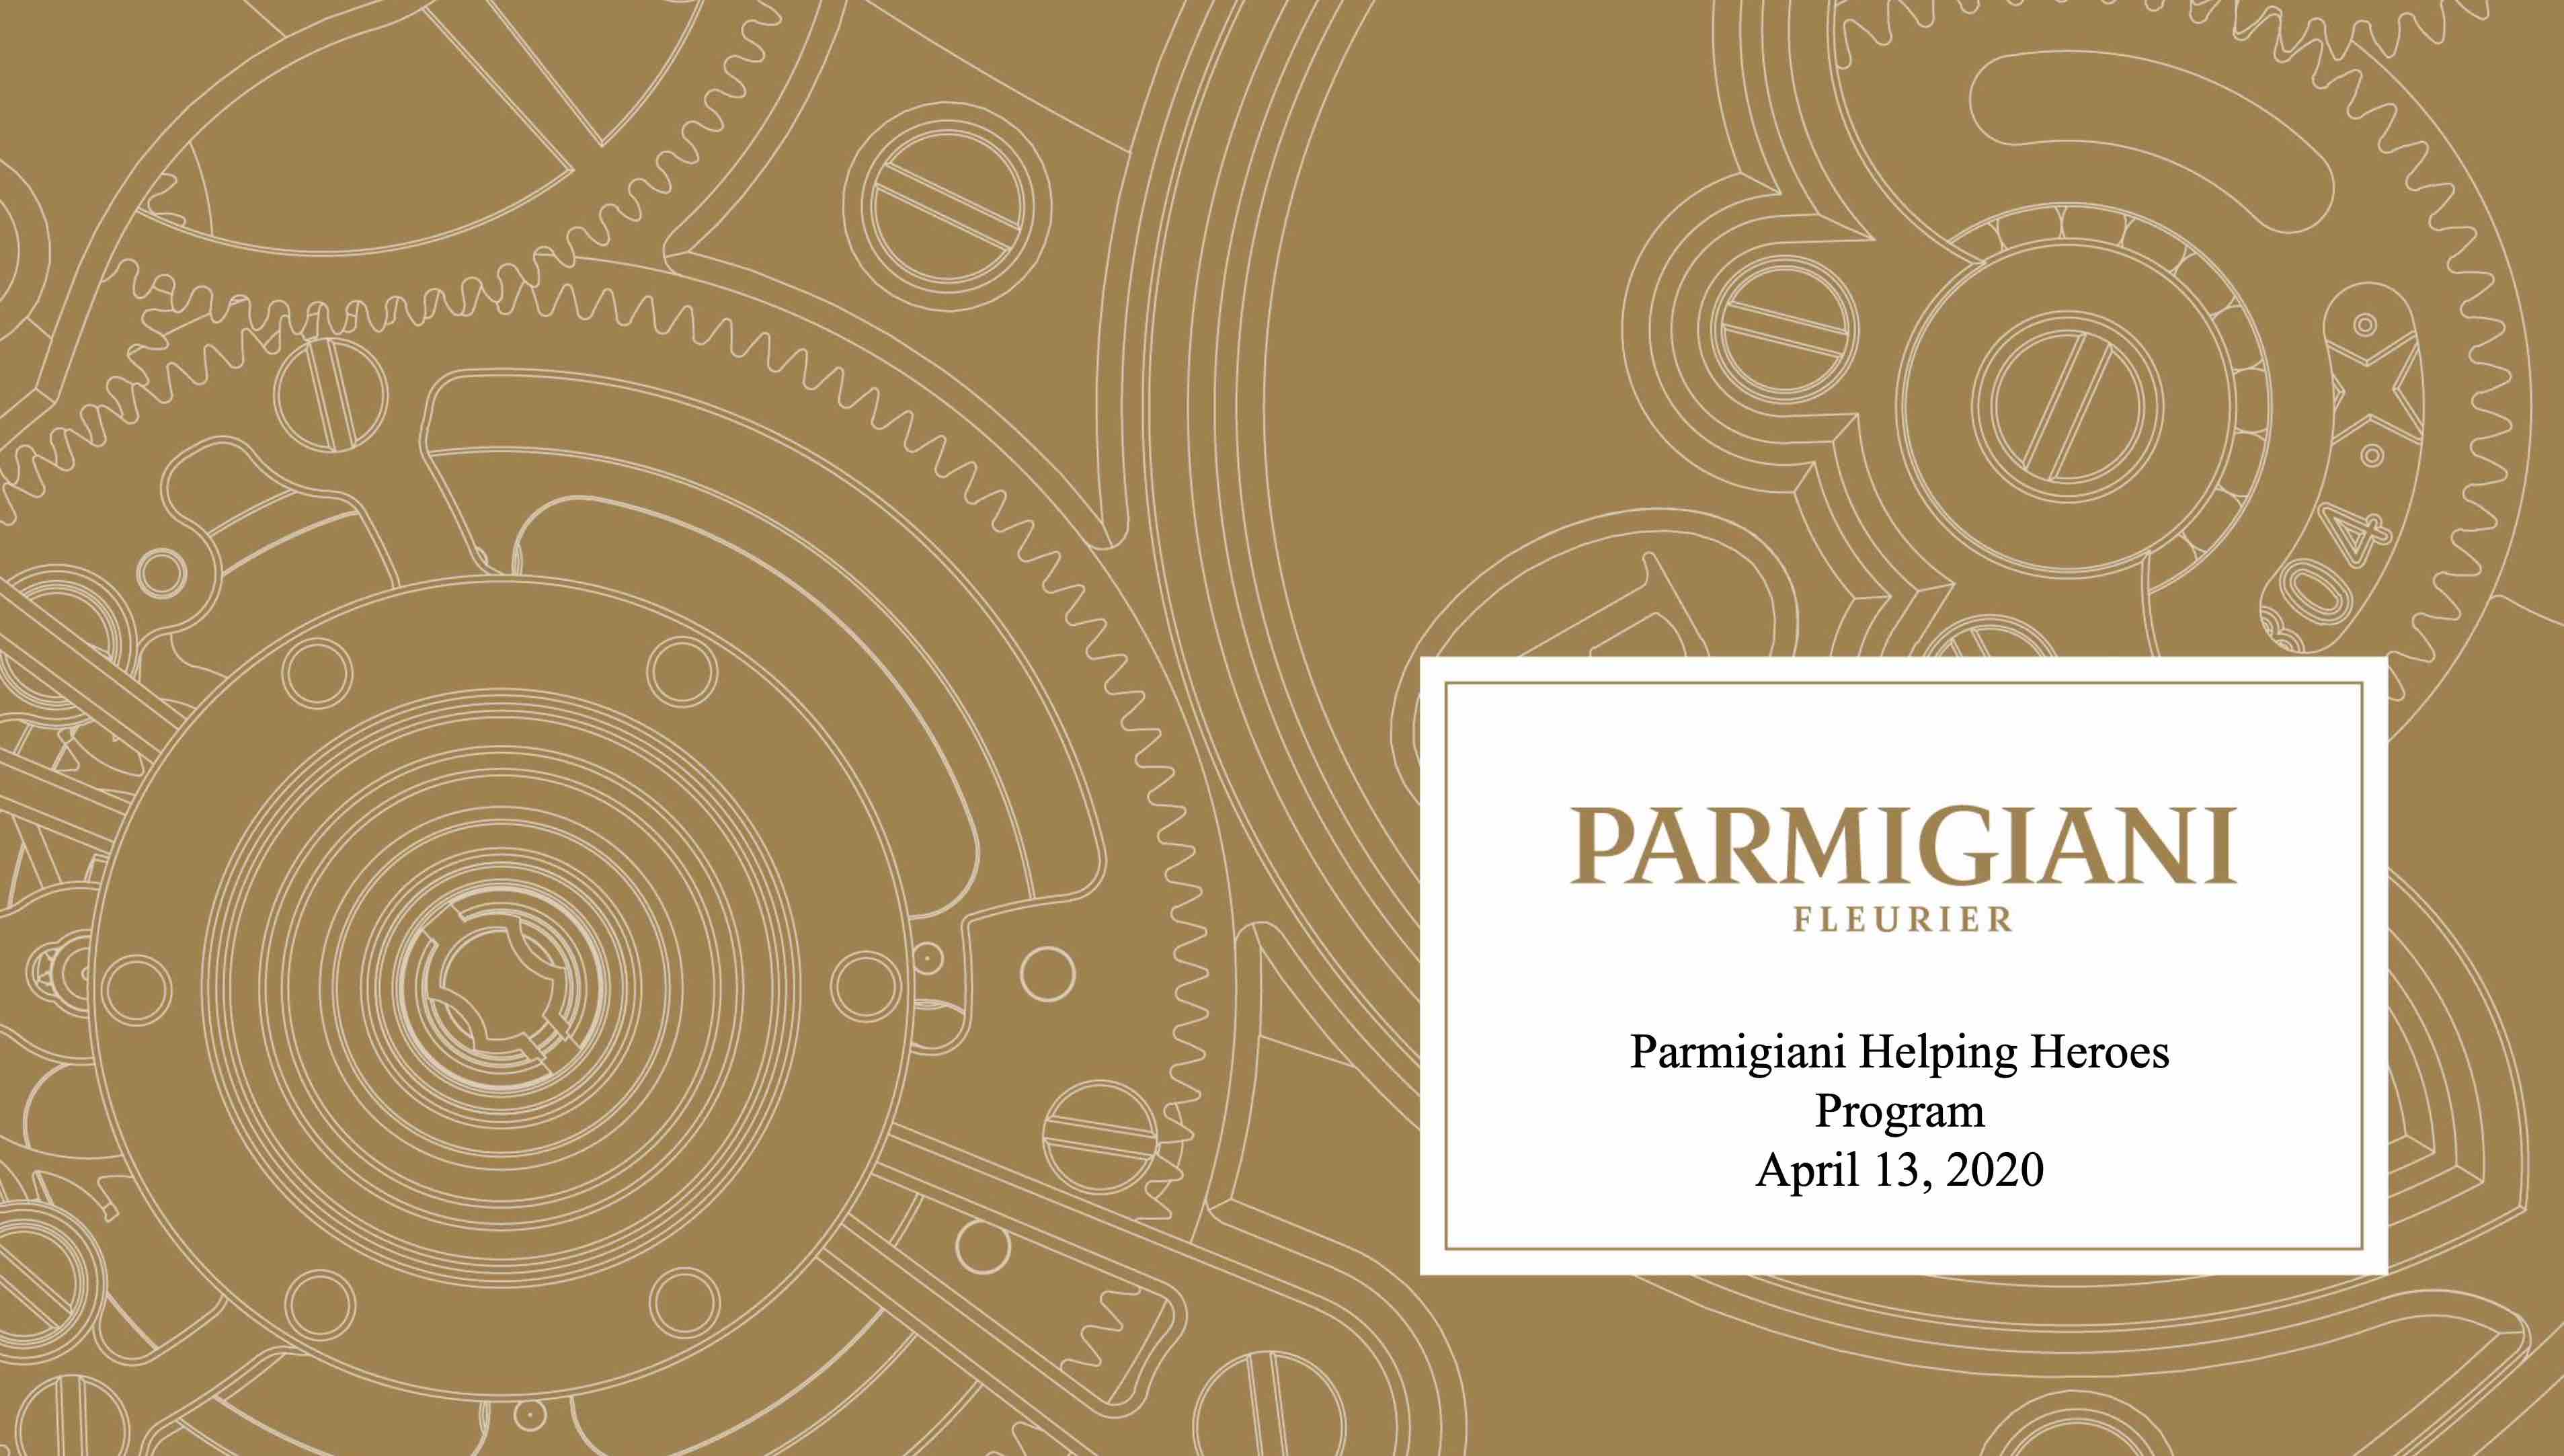 Parmigiani Fleurier “Helping Heroes” Program